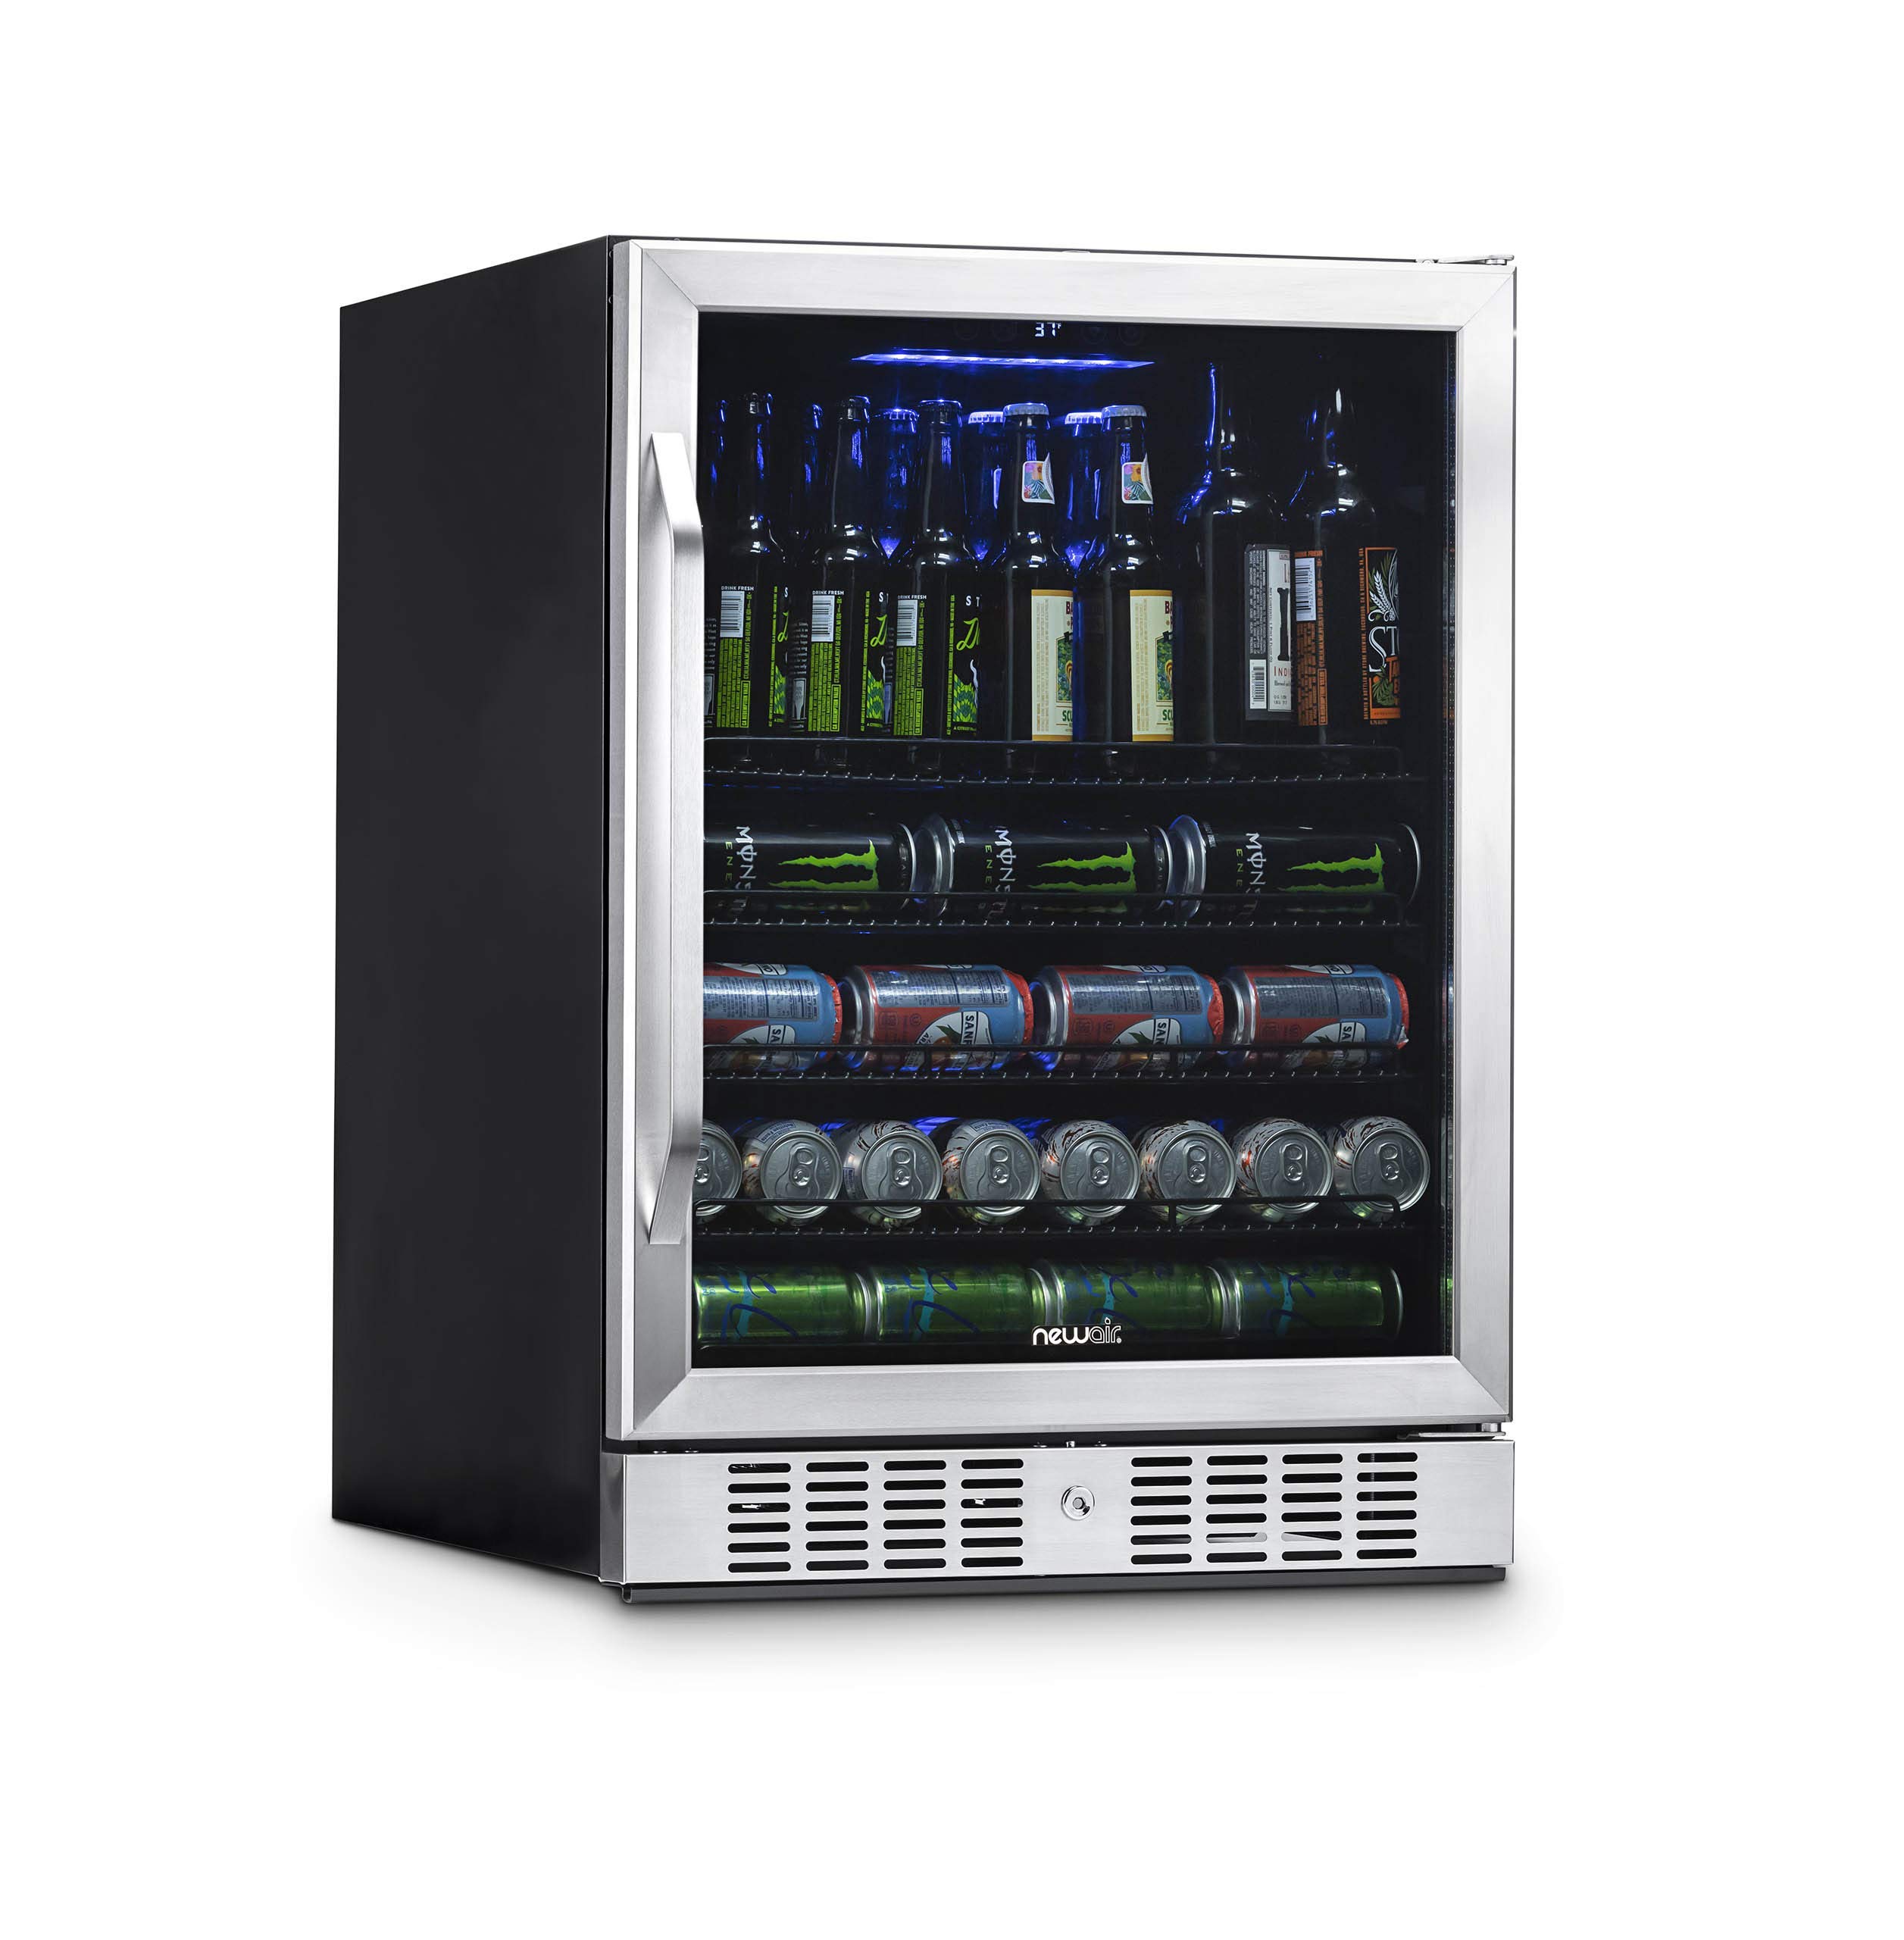 NewAir 大型饮料冰箱冷藏箱，容量 177 罐 - 迷你酒吧啤酒冰箱，带可逆铰链玻璃门和底部钥匙锁 - 冷却至 37F - 不锈钢 ABR-1770